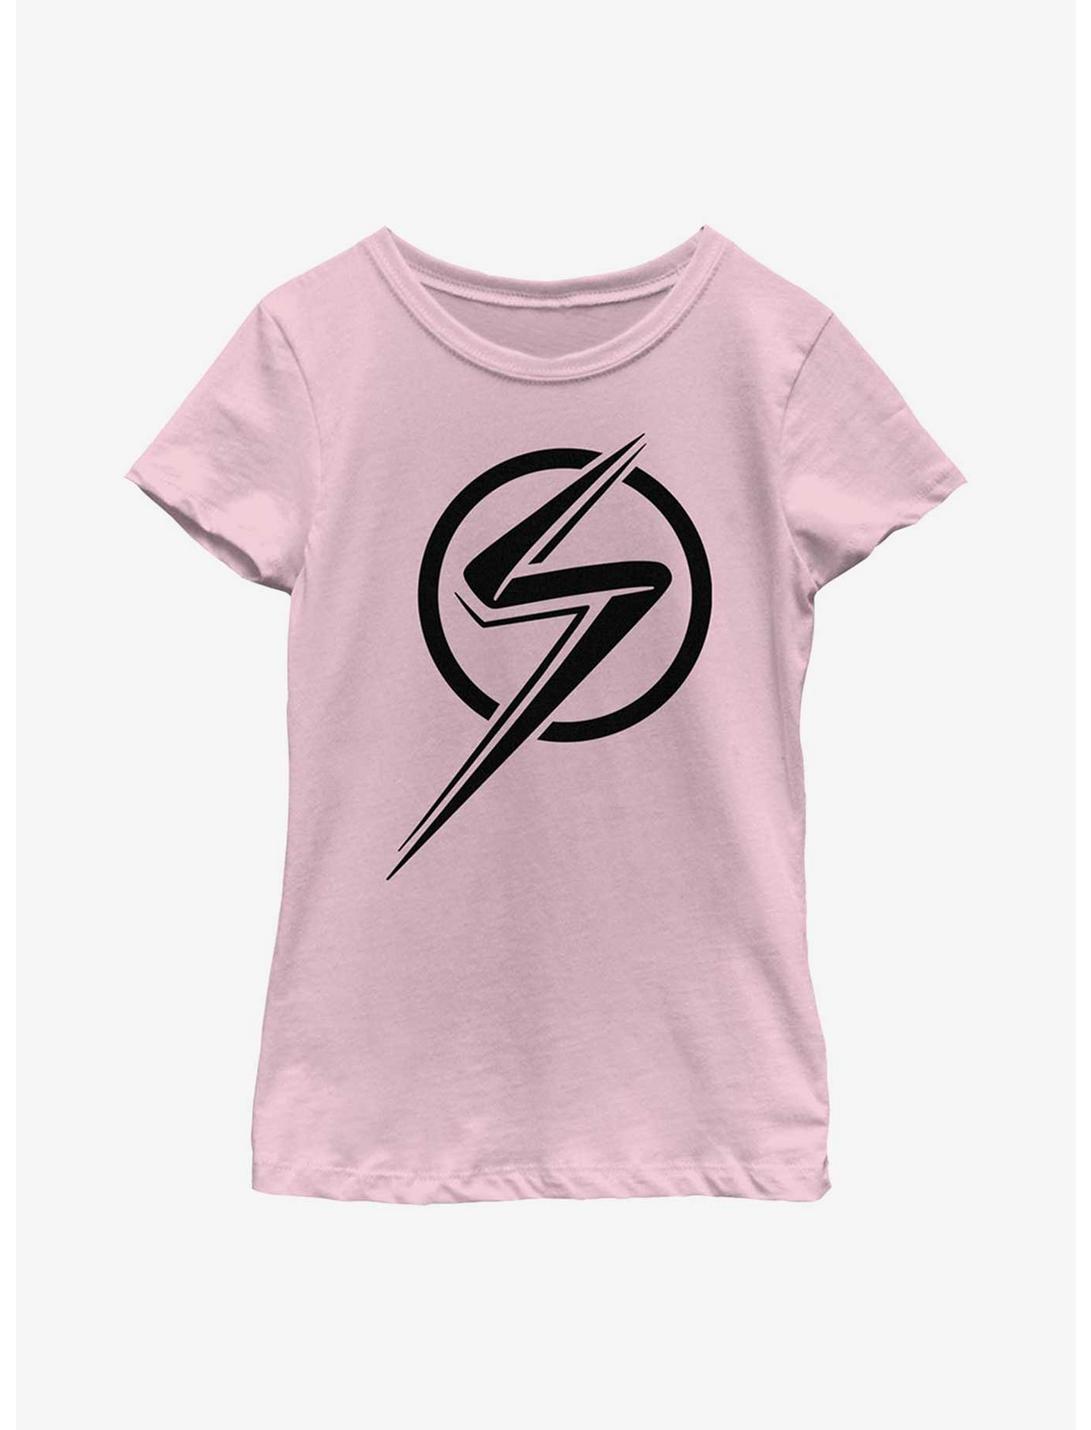 Marvel Ms. Marvel Single Color Youth Girls T-Shirt, PINK, hi-res